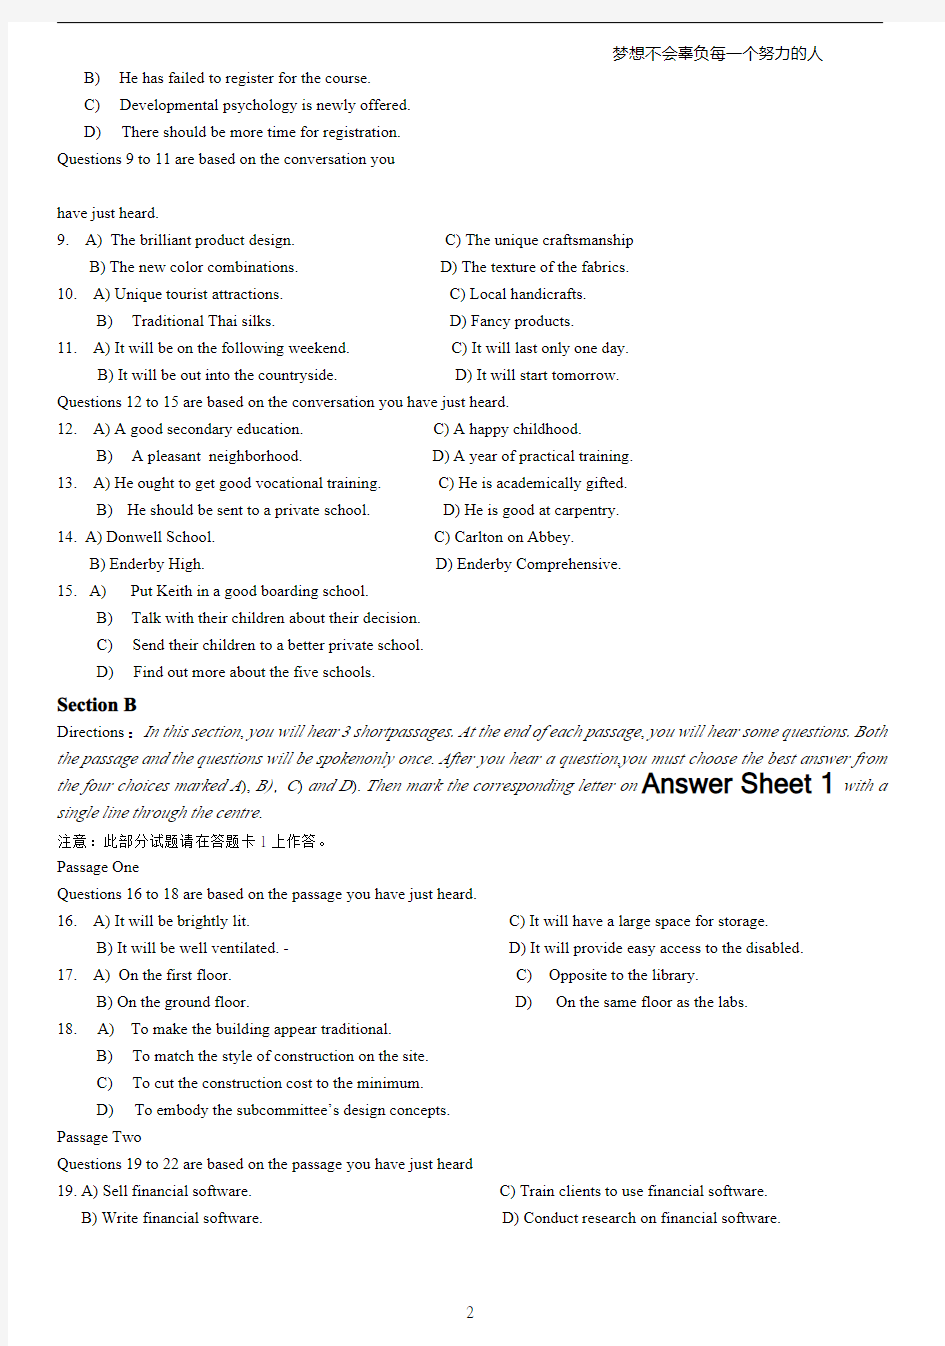 2014年6月大学英语六级考试真题(卷一)